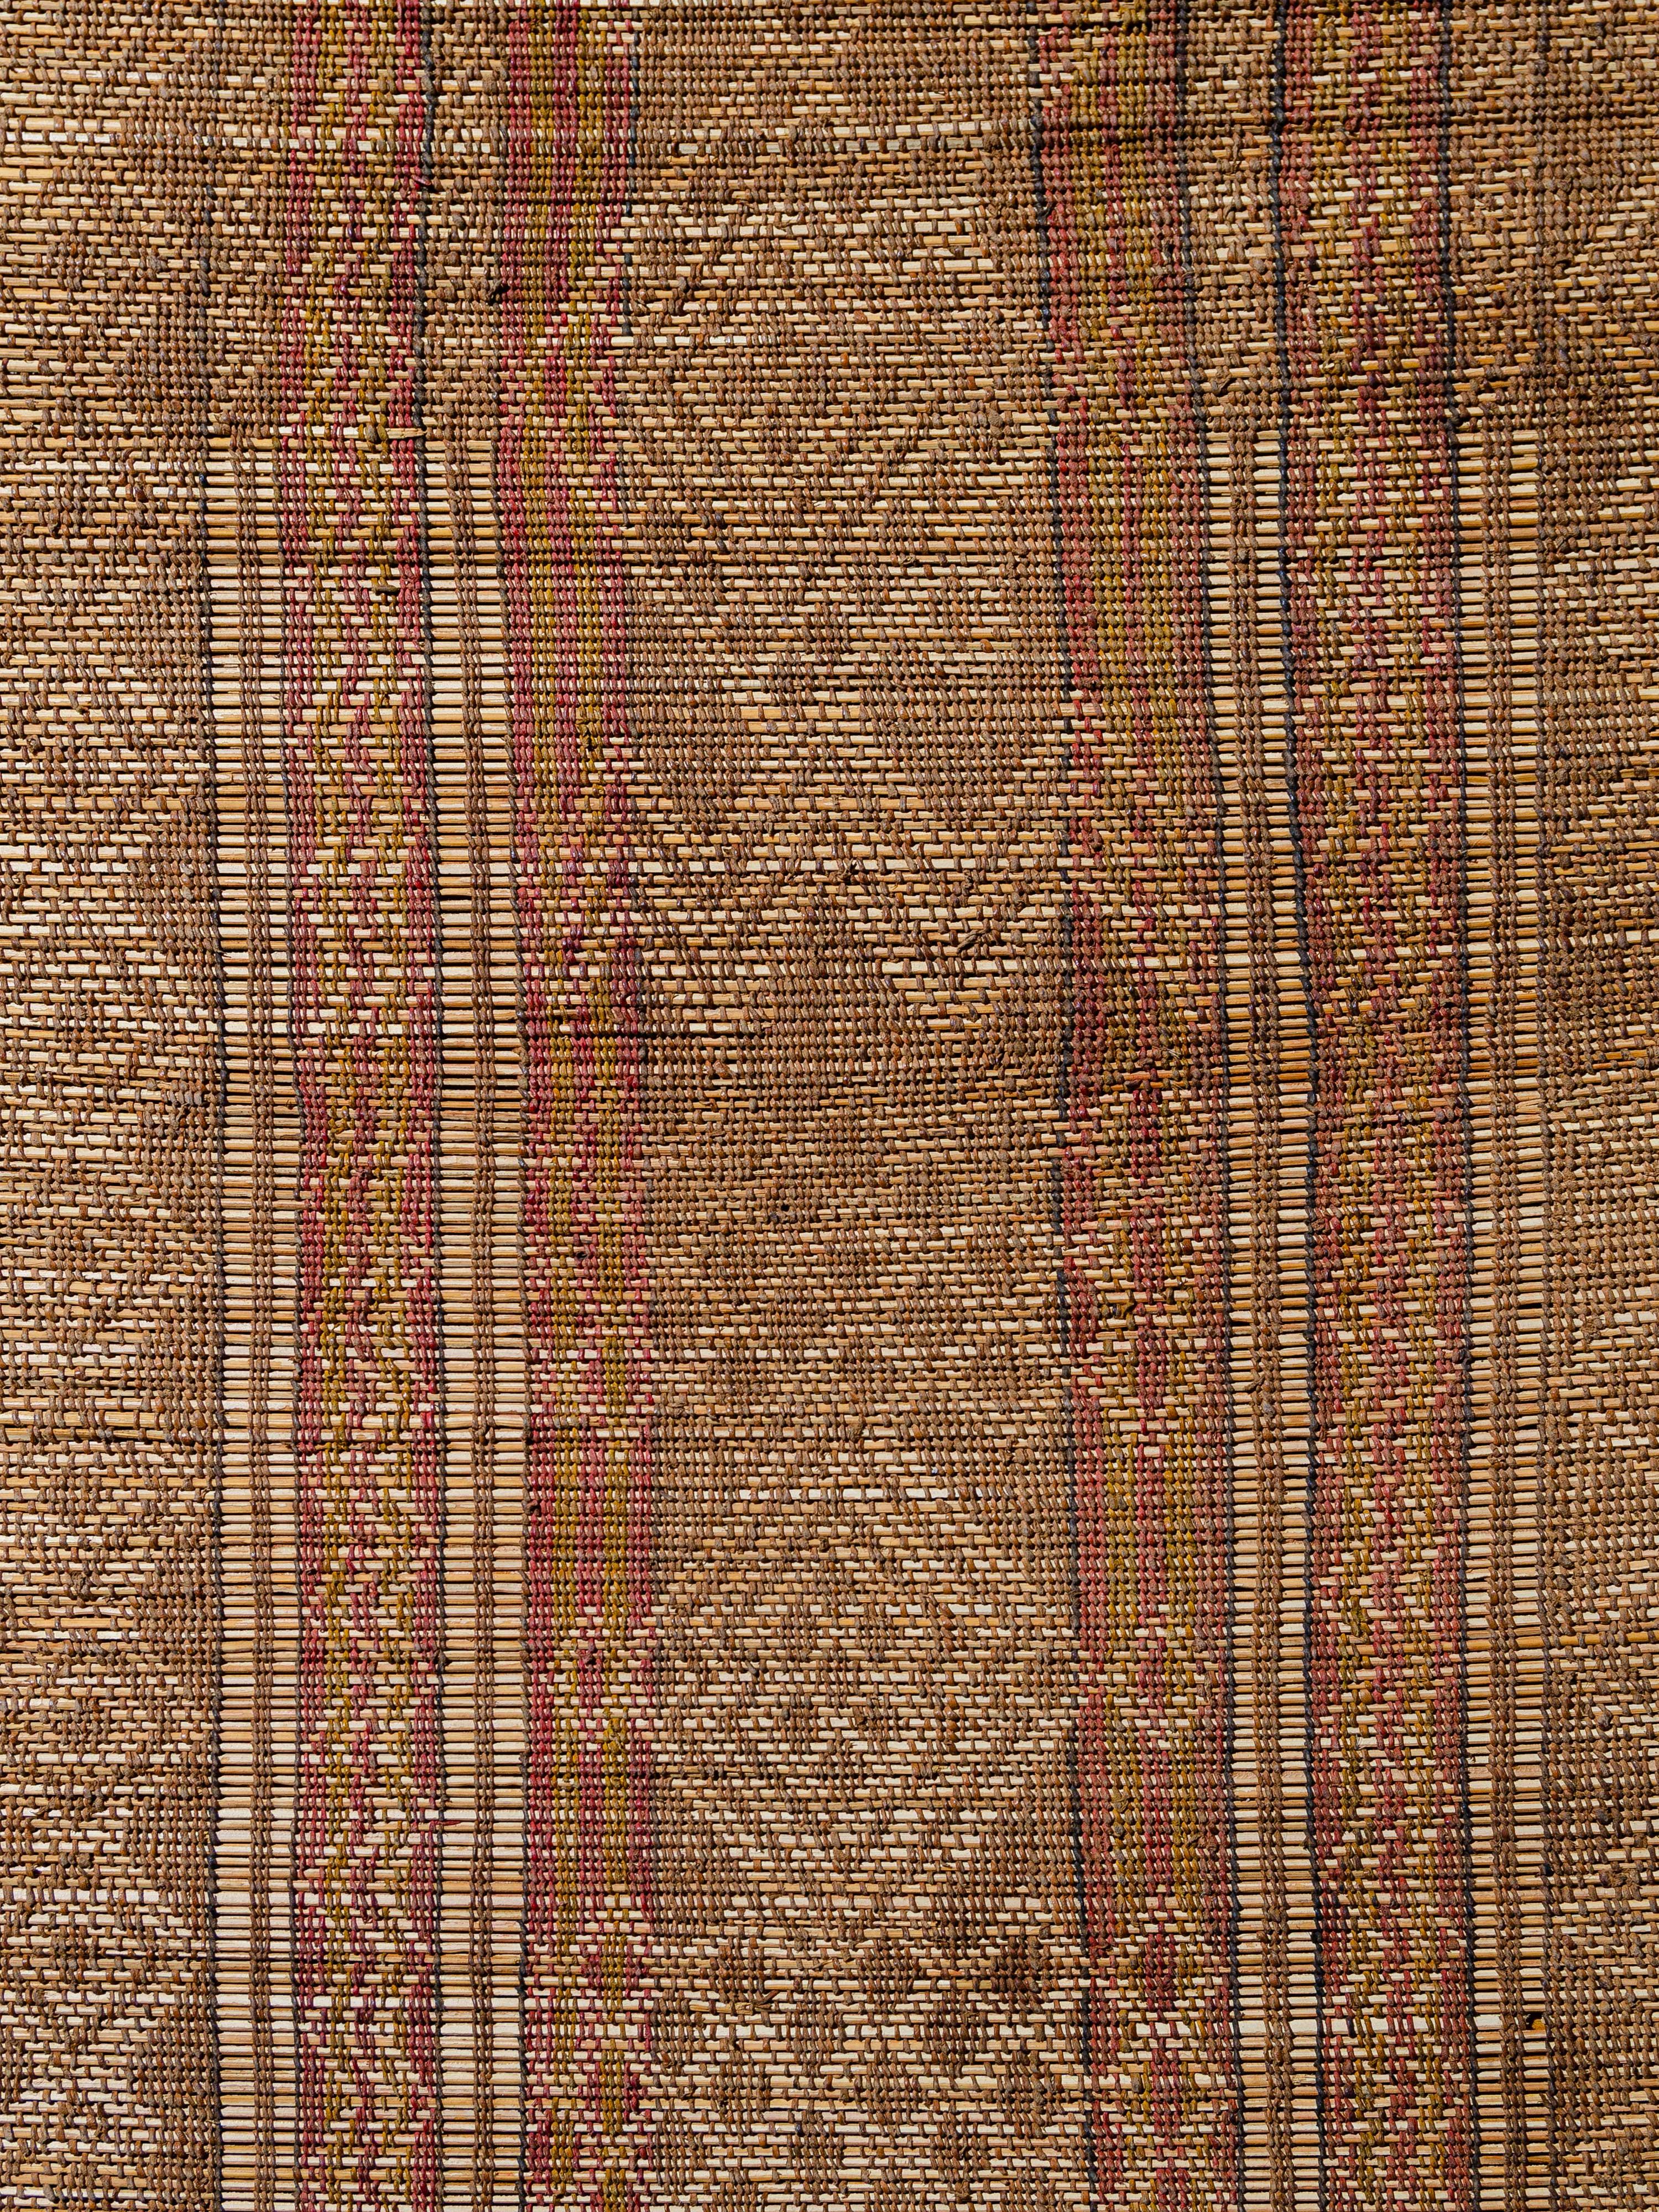 Tissés par les tribus nomades touaregs de Mauritanie avec du roseau de palmier et du cuir de chameau, les tapis touaregs offrent une alternative aux revêtements de sol textiles traditionnels. Cet exemple présente des bandes verticales de motifs